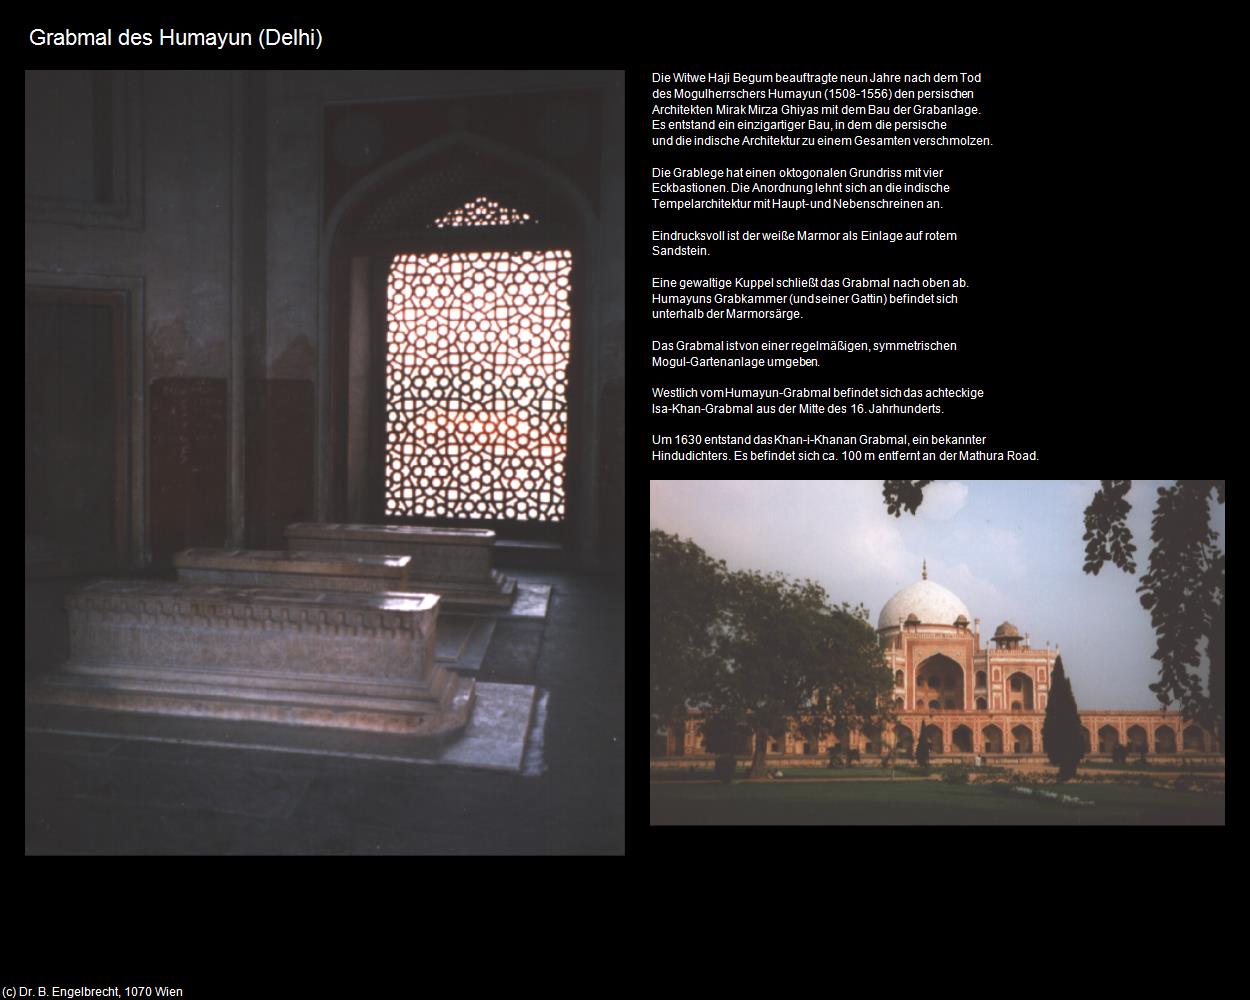 Grabmal des Humayun (Delhi) in Rajasthan - das Land der Könige